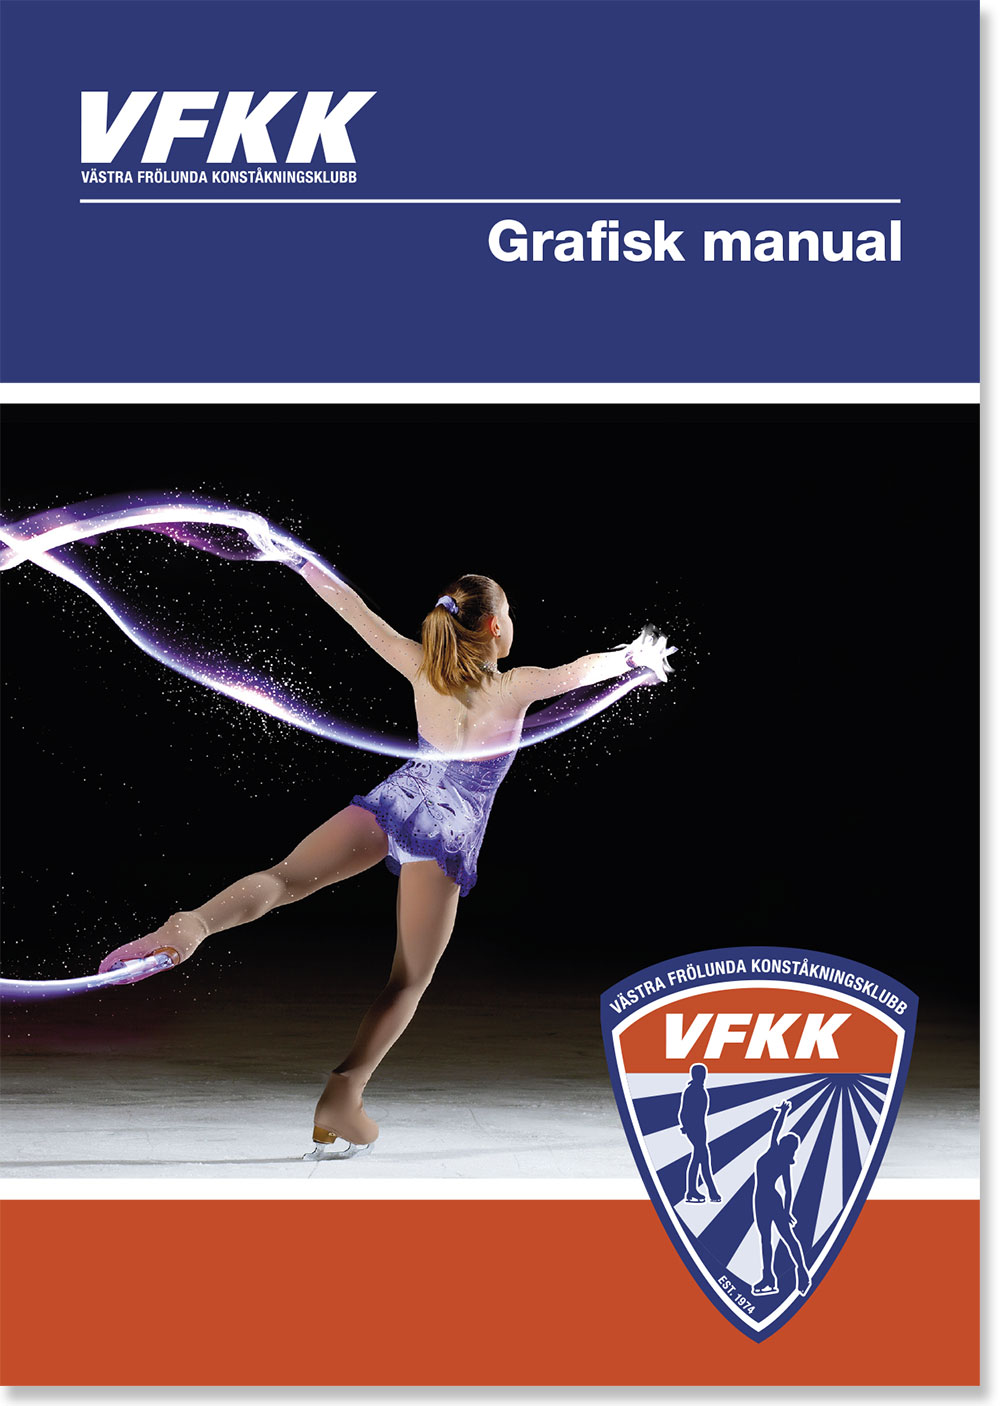 Grafisk manual till VFKK (Västra Frölunda Konståkningsklubb) gjord av Xtrovert Media 2015.